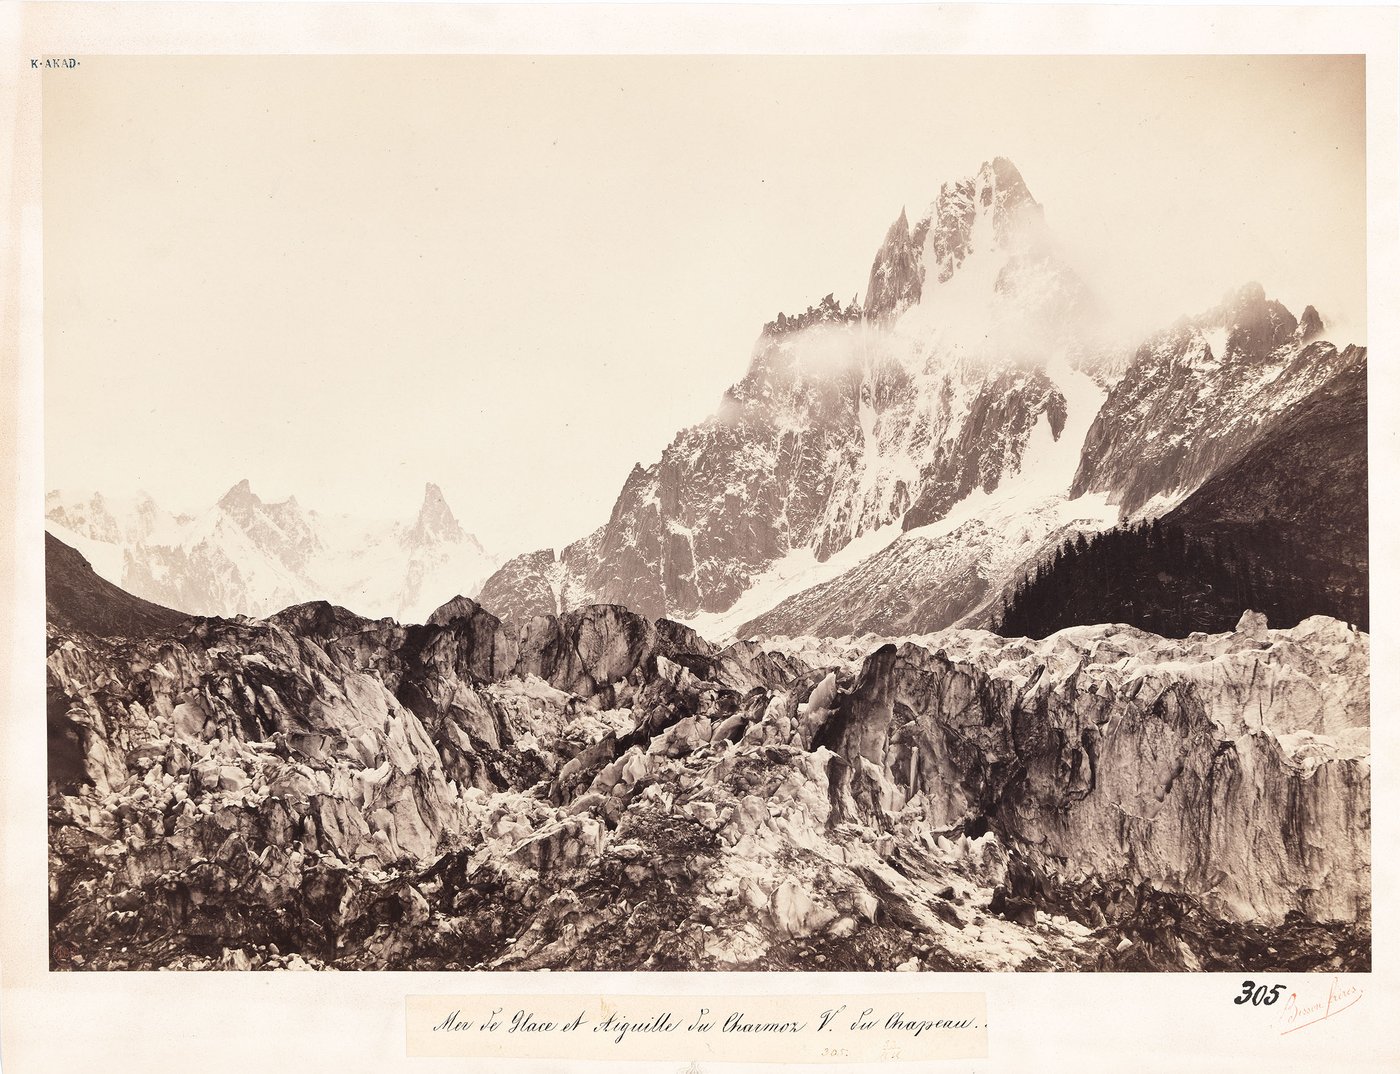 Schwarz-Weiß-Fotografie eines Gletschers und zum Teil schneebedeckten Gebirgszug in den französischen Alpen.